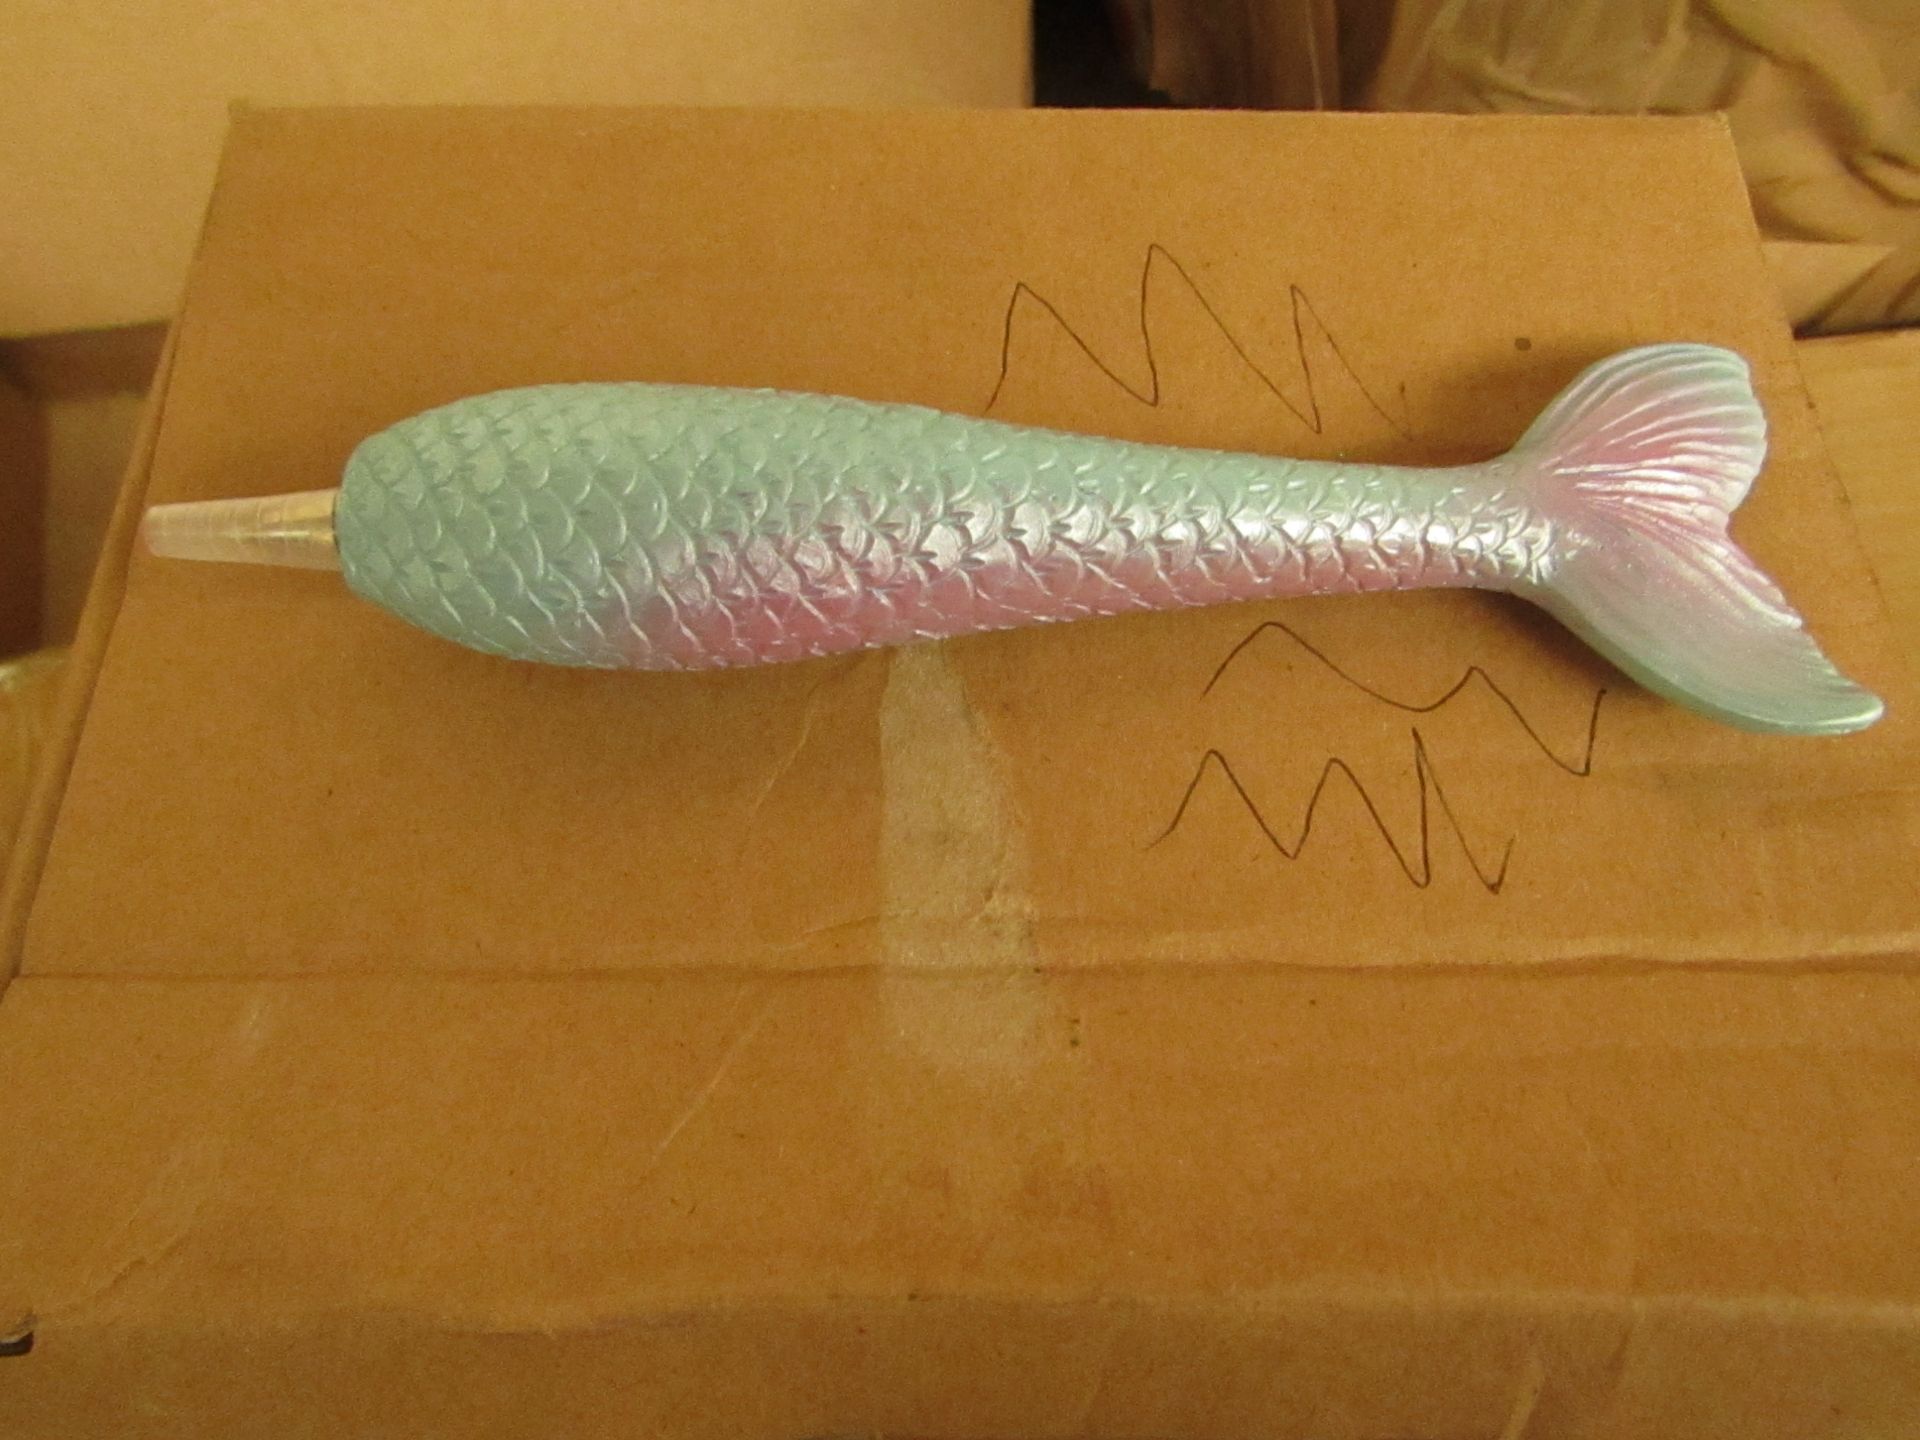 Box of 12 Mermaid Tail Racoon Pens. Unused & Packaged.